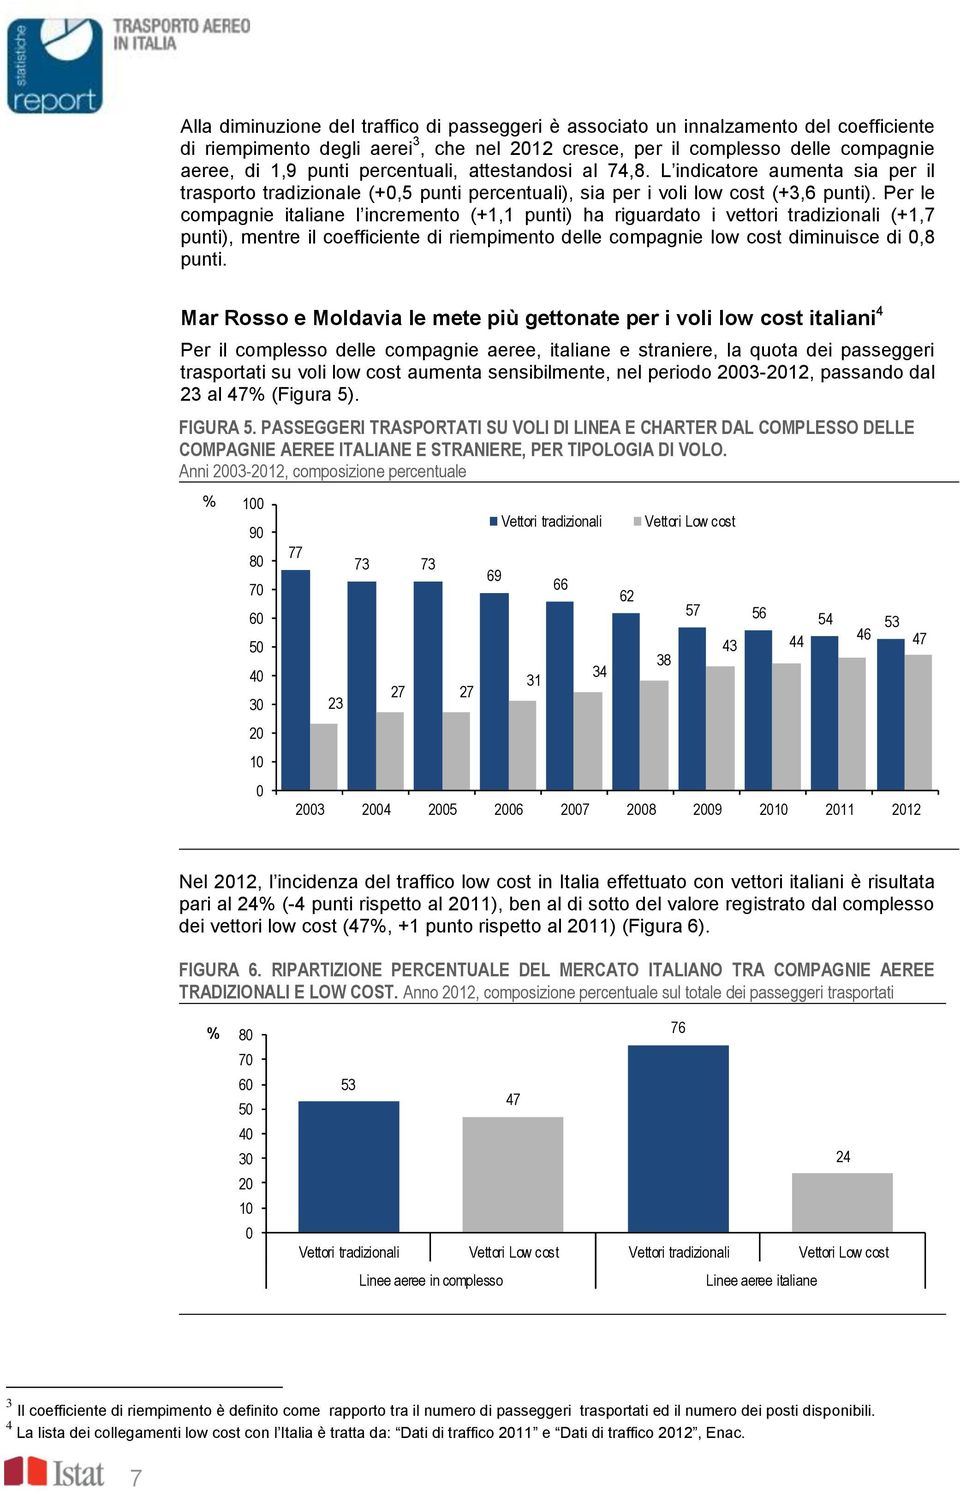 Per le compagnie italiane l incremento (+1,1 punti) ha riguardato i vettori tradizionali (+1,7 punti), mentre il coefficiente di riempimento delle compagnie low cost diminuisce di 0,8 punti.